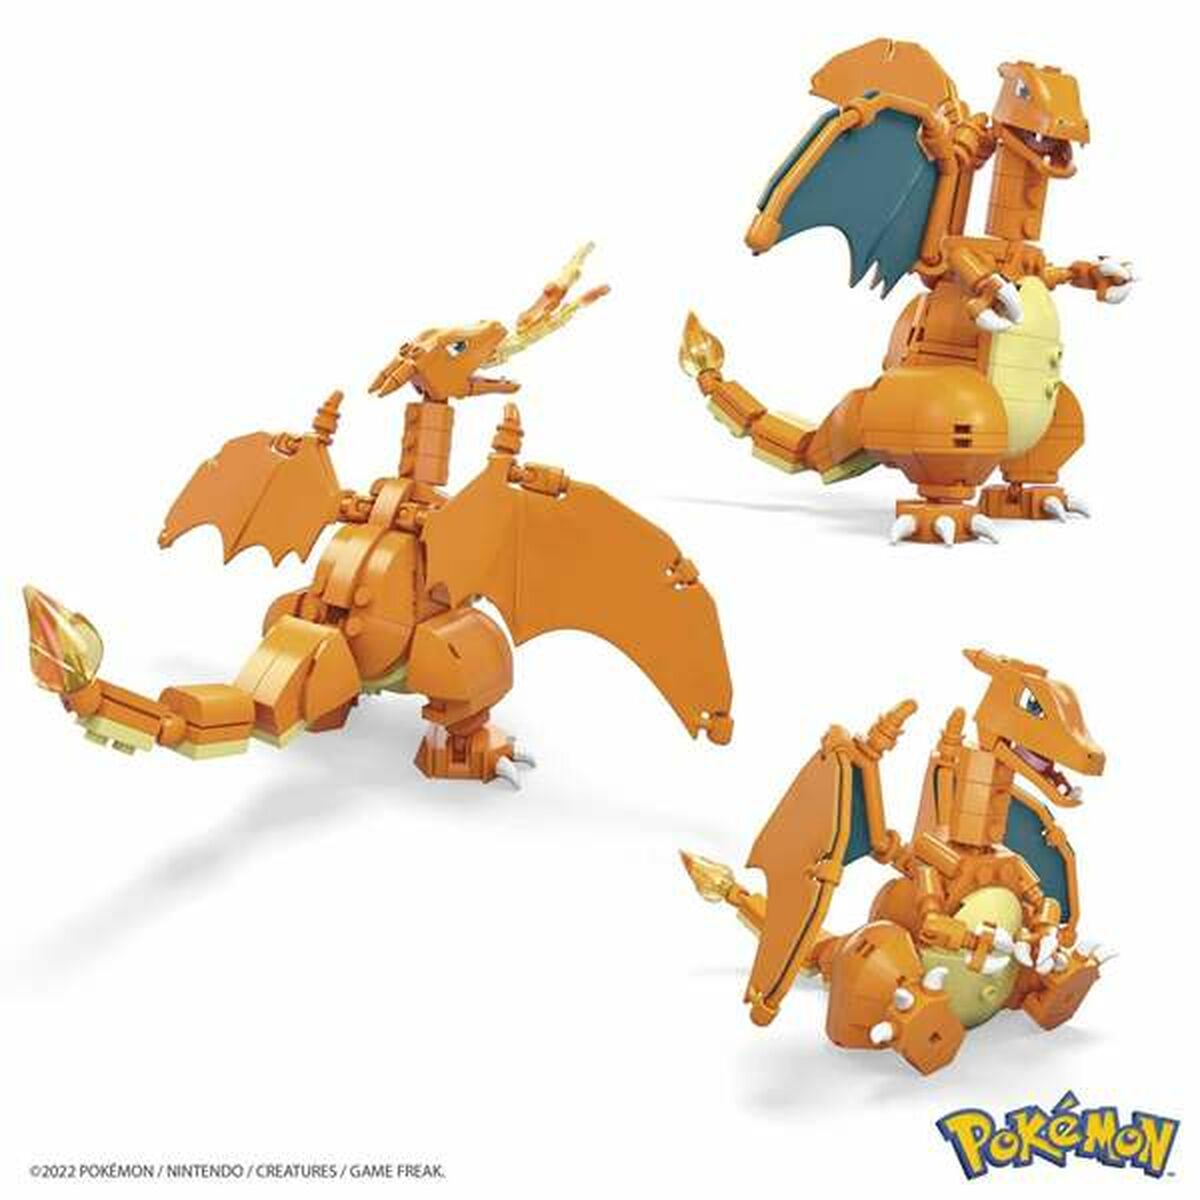 Byggsats Pokémon Mega Charizard 222 Delar-Leksaker och spel-Pokémon-peaceofhome.se